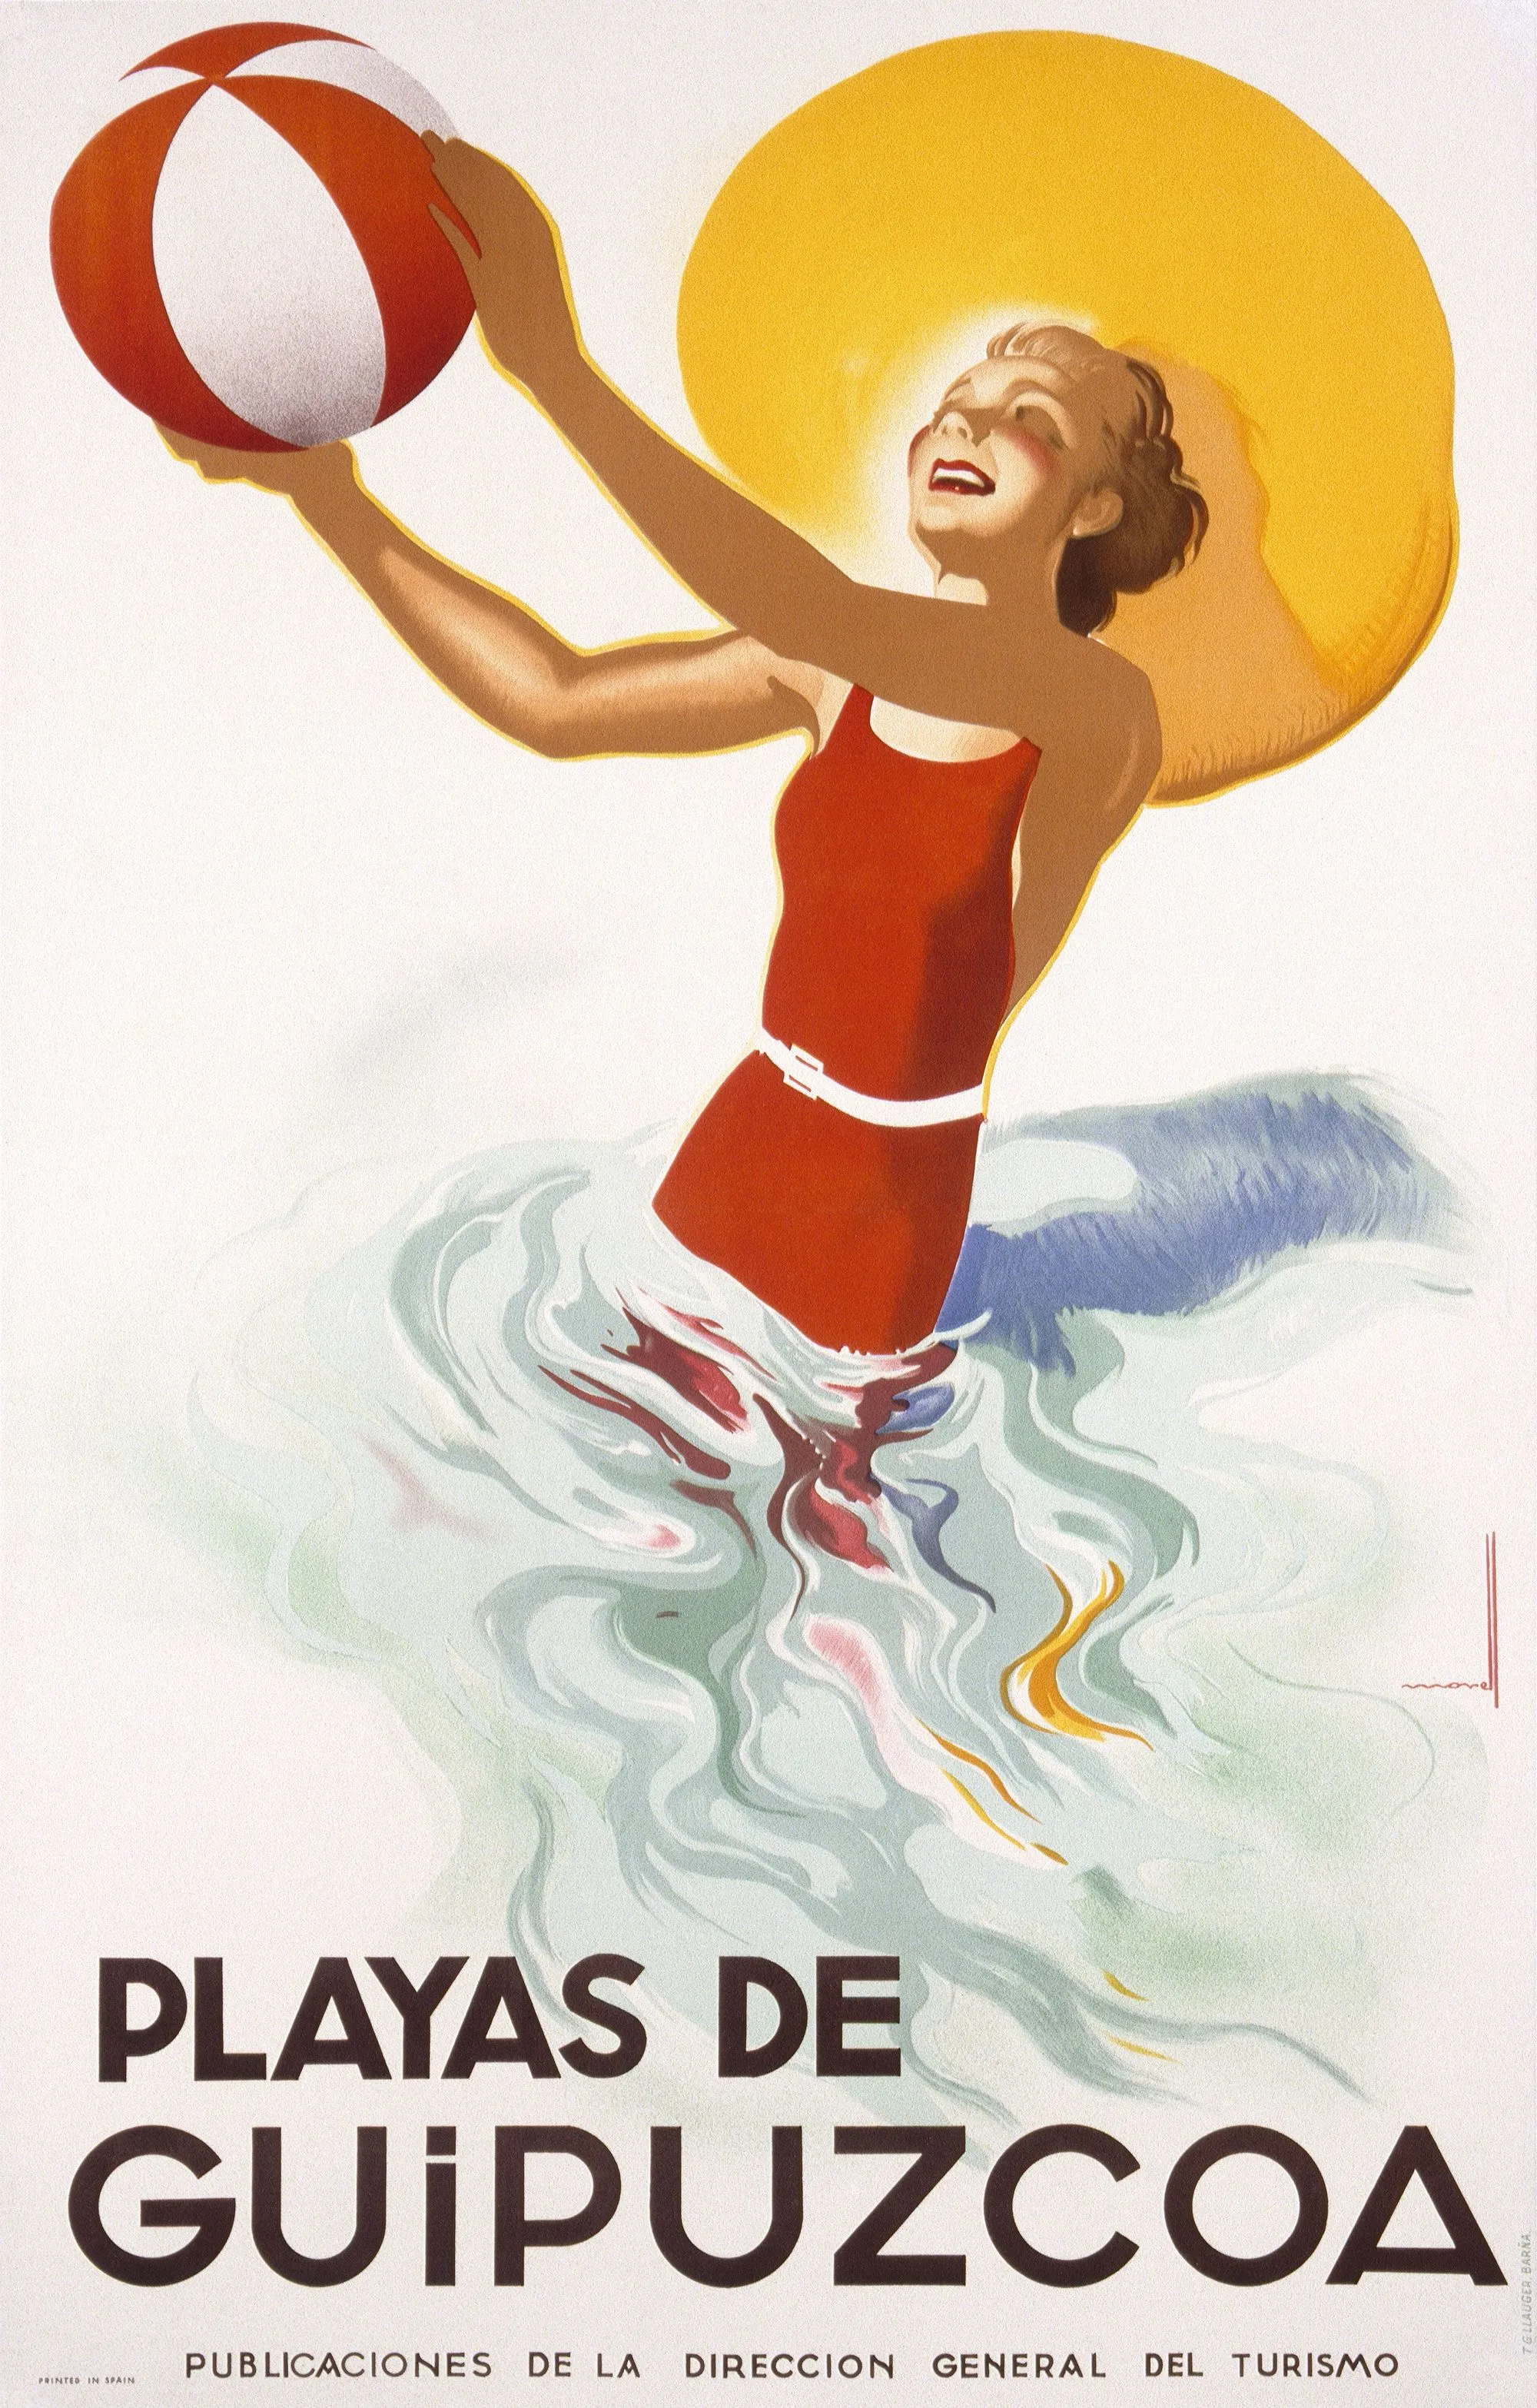 Une affiche de promotion du tourisme en Espagne, début du XXe siècle